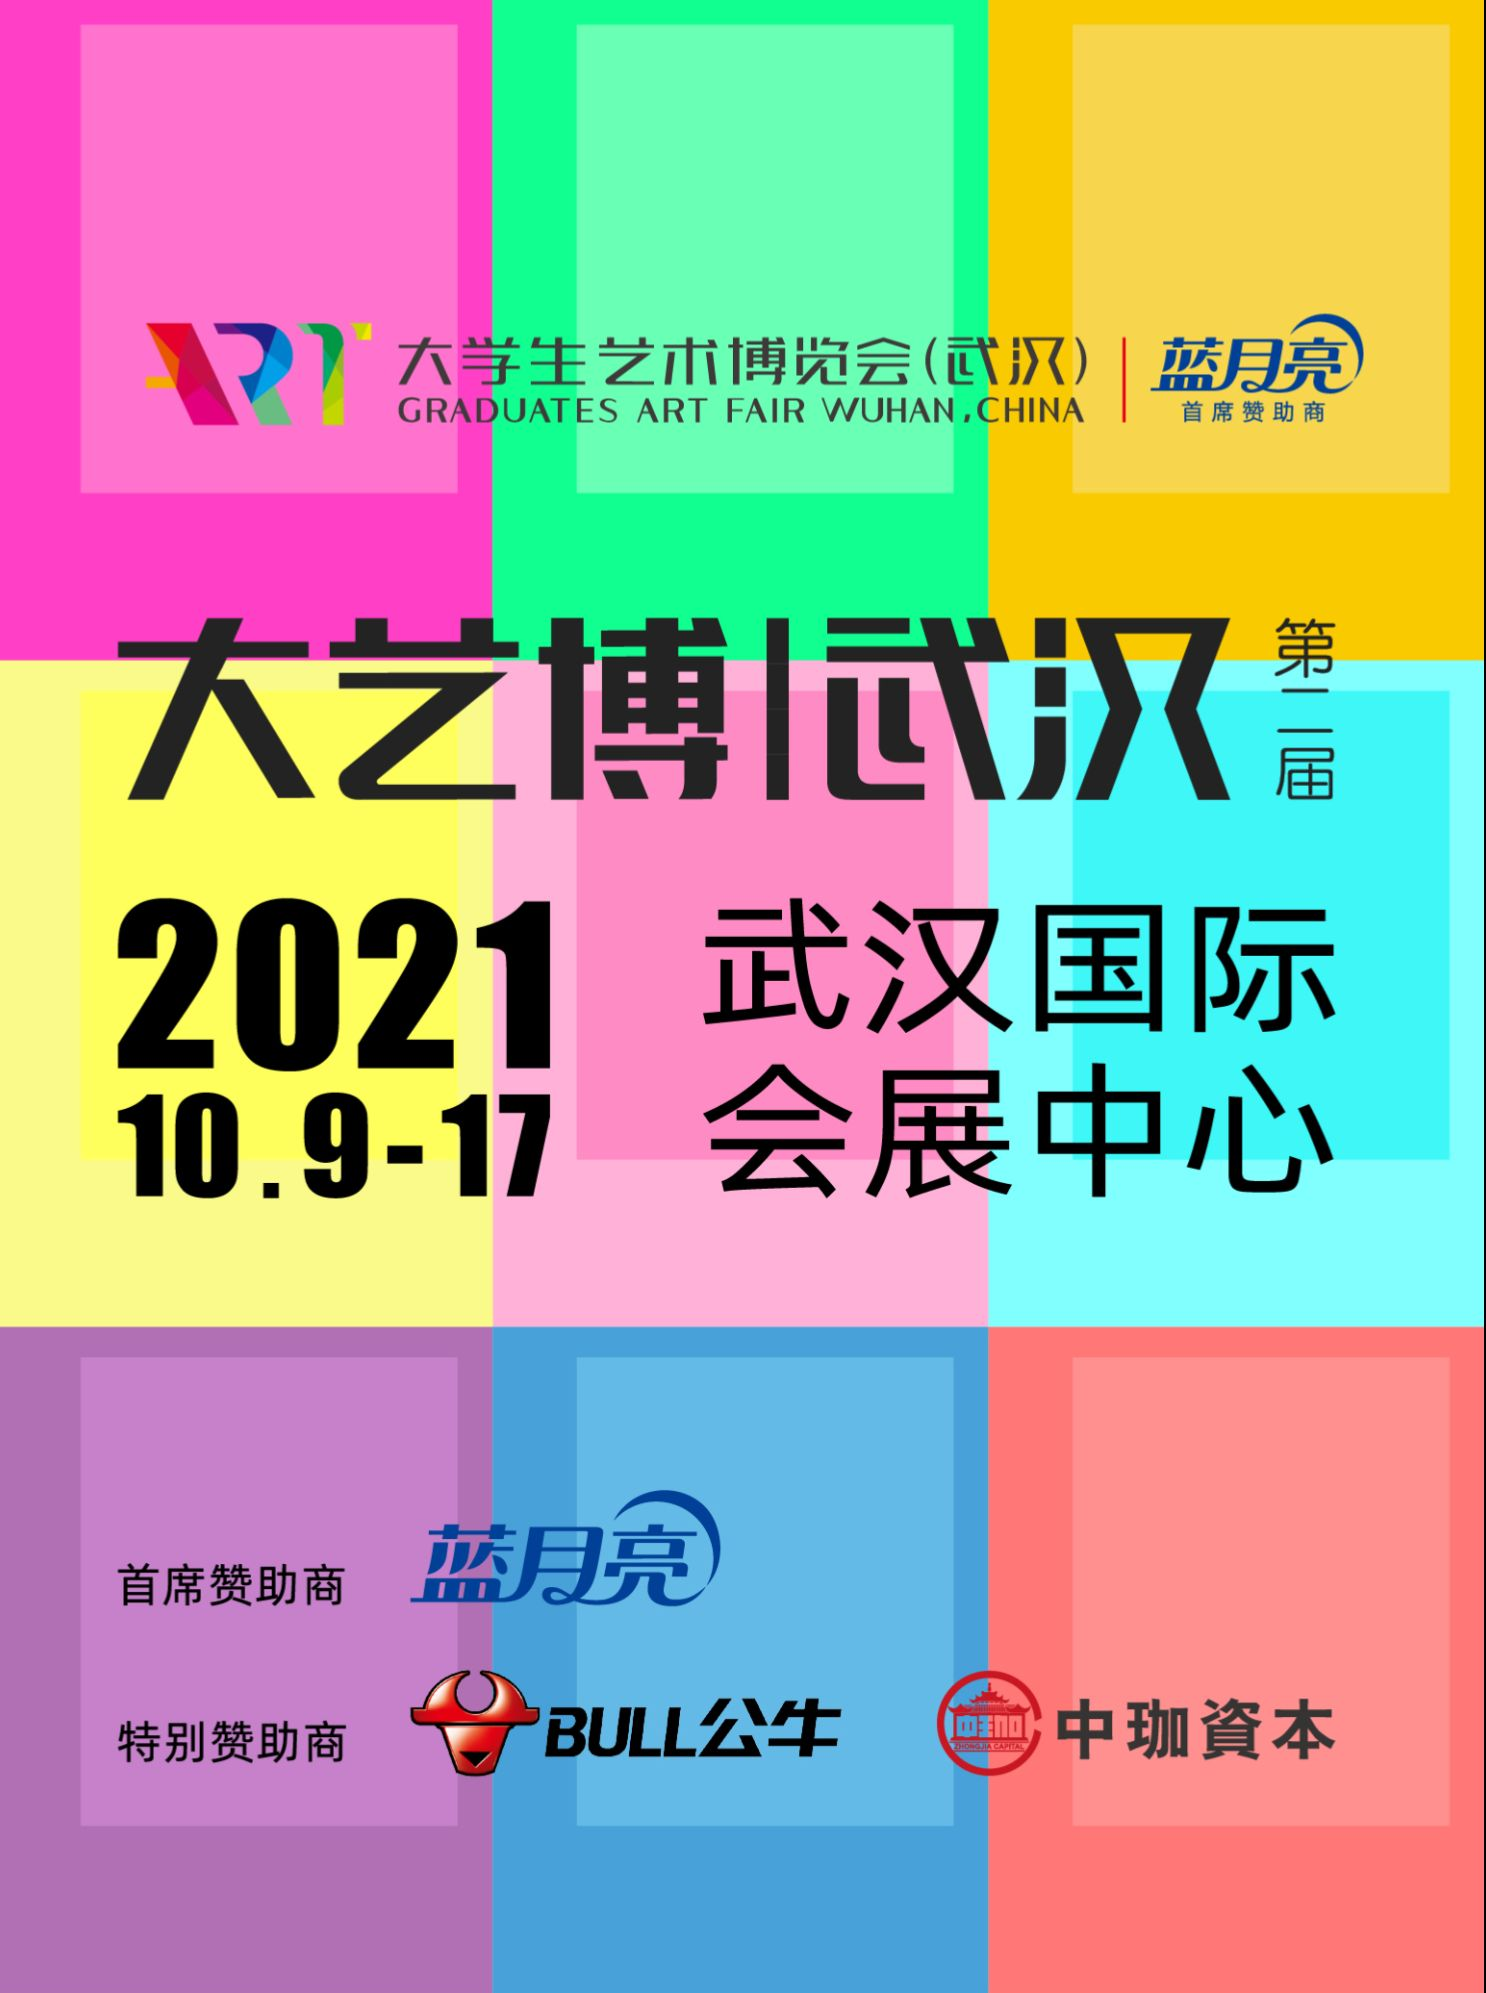 「早鸟」2021第二届大学生艺术博览会（武汉）